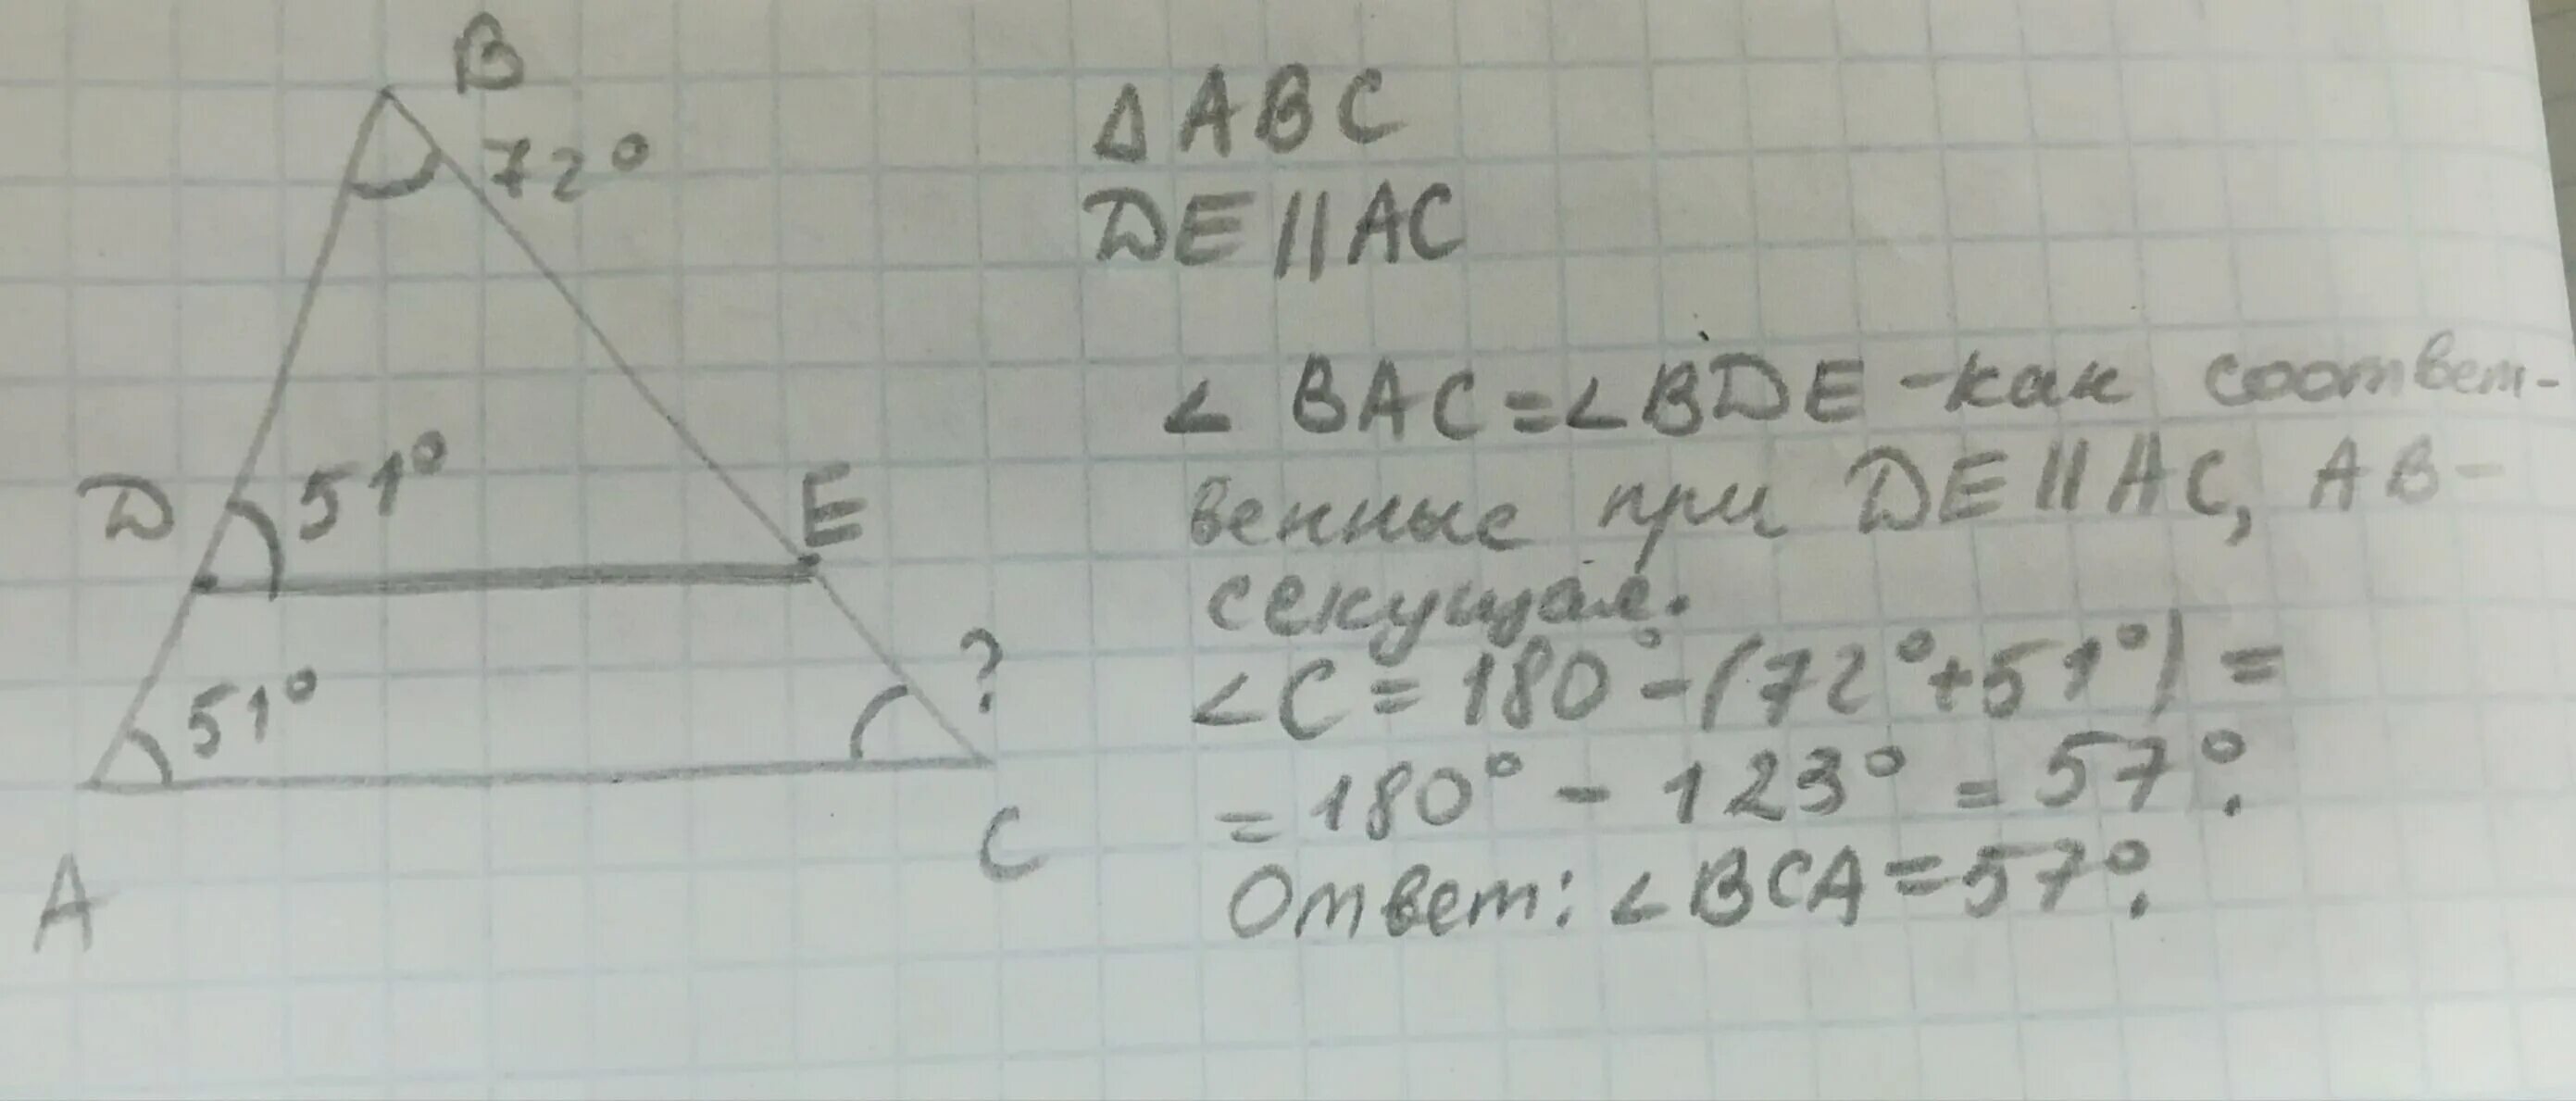 В треугольнике ABC провели de параллельно AC известно что d. Нарисуй треугольник ABC И проведи de AC известно что d ab e BC. Нарисуй треугольник ABC И проведи de параллельную AC. Нарисуйте треугольник ABC И проведите de AC известно что д параллельно.